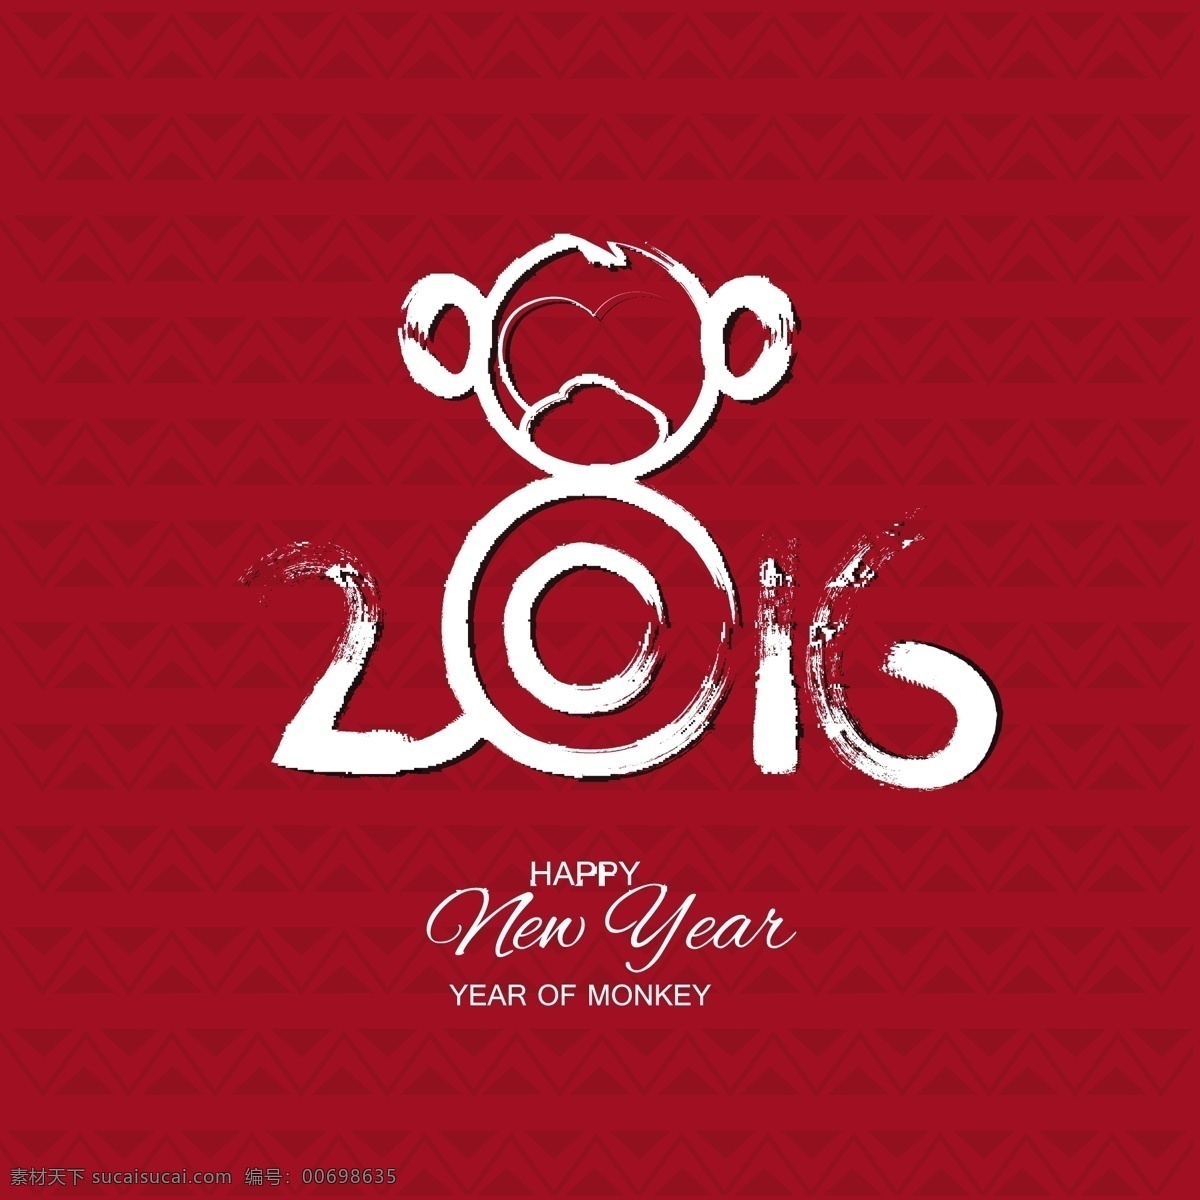 农历 丙申 猴年 主题 创意设计 2016 新年 丙申年 恭贺新禧 水墨 飞白 底纹 背景 红色 猴子 黑白 春节